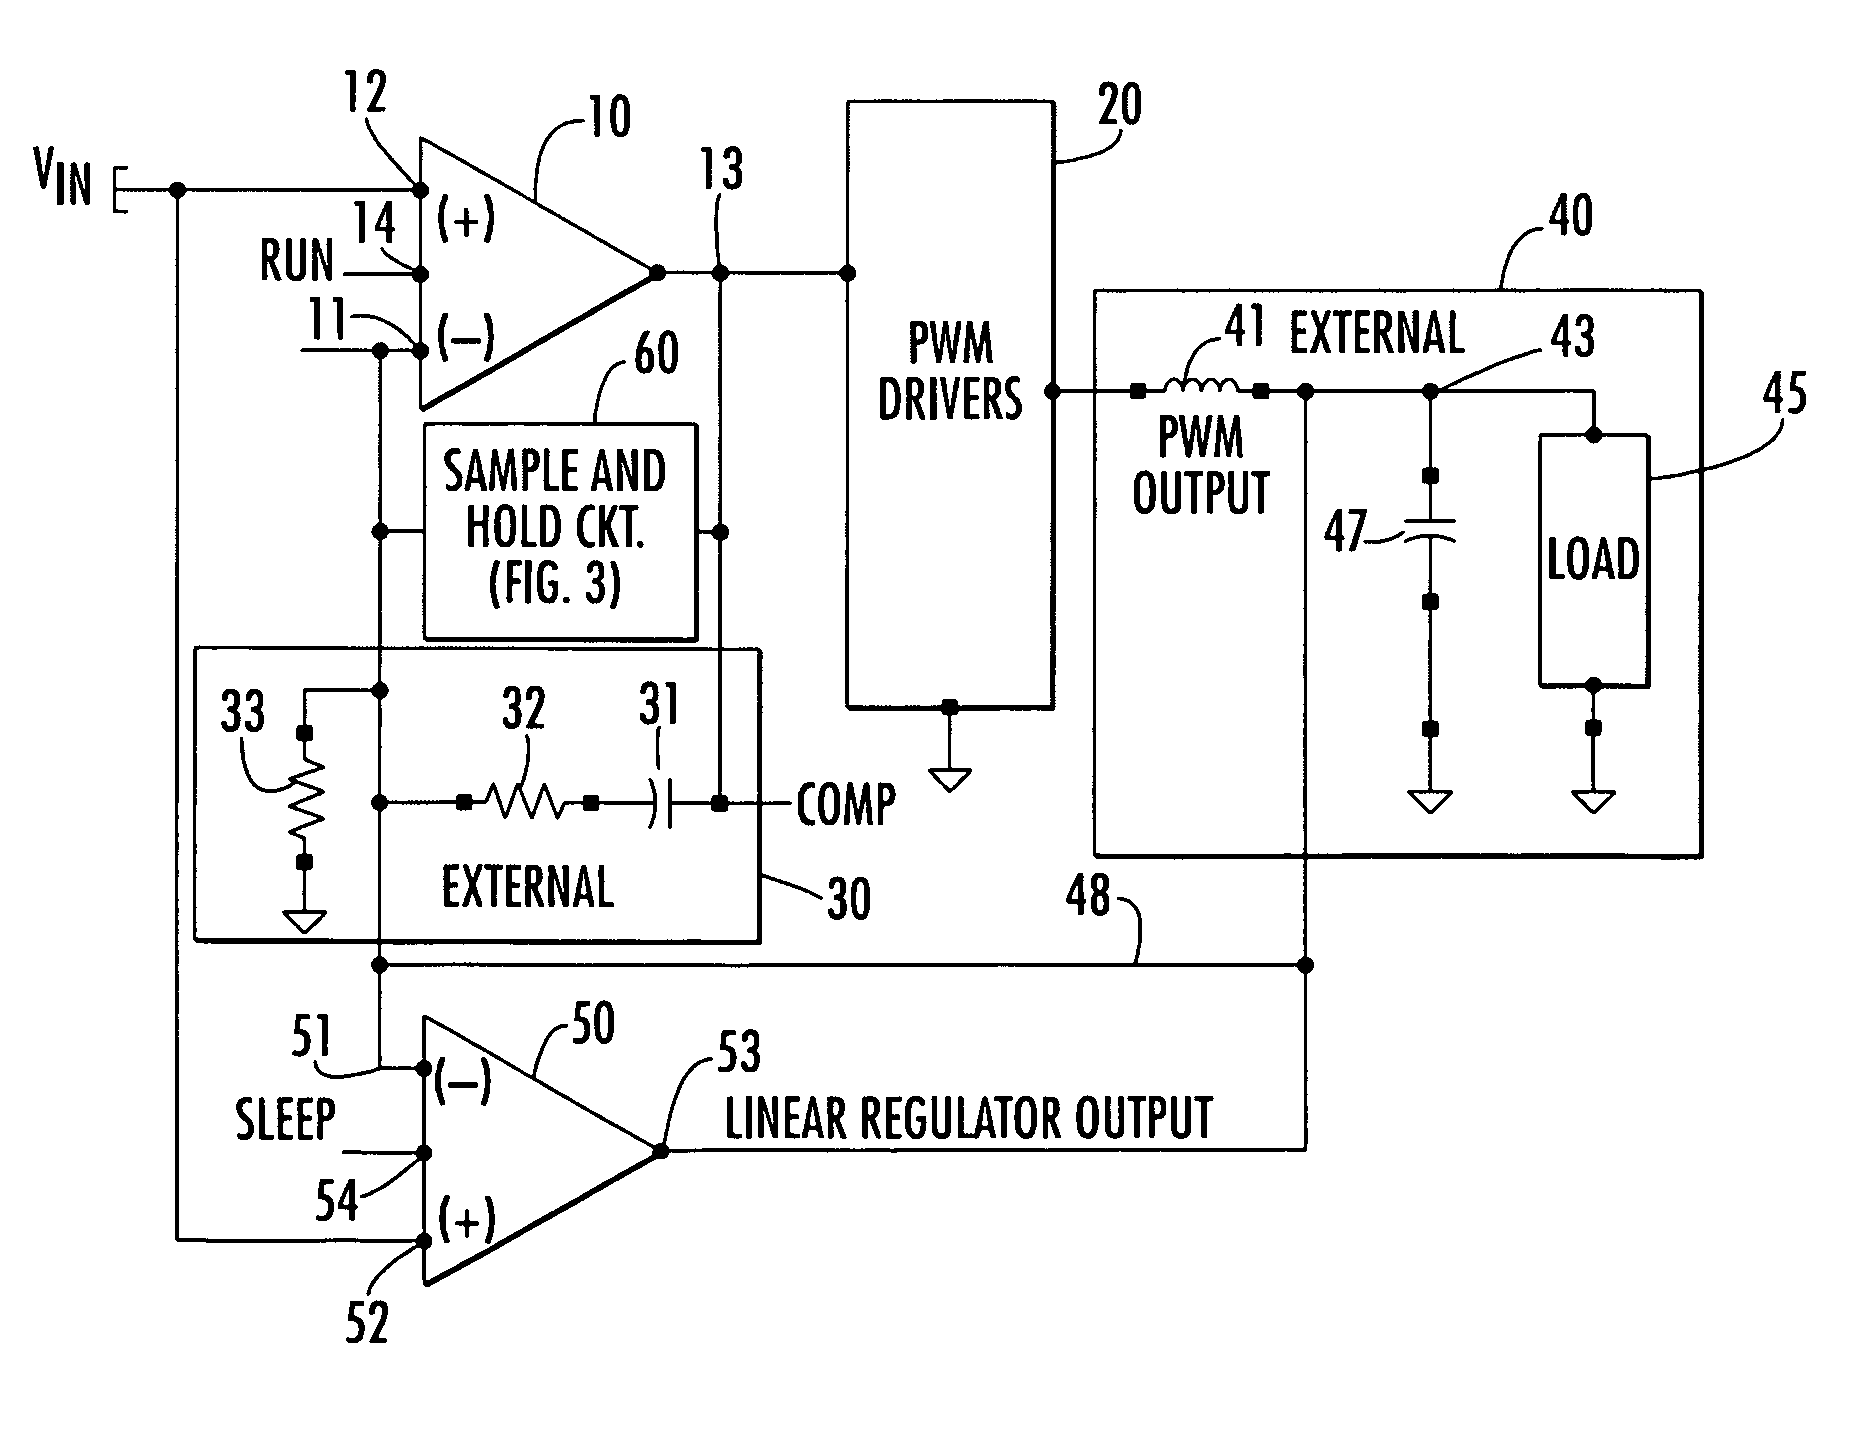 Compensation sample and hold for voltage regulator amplifier